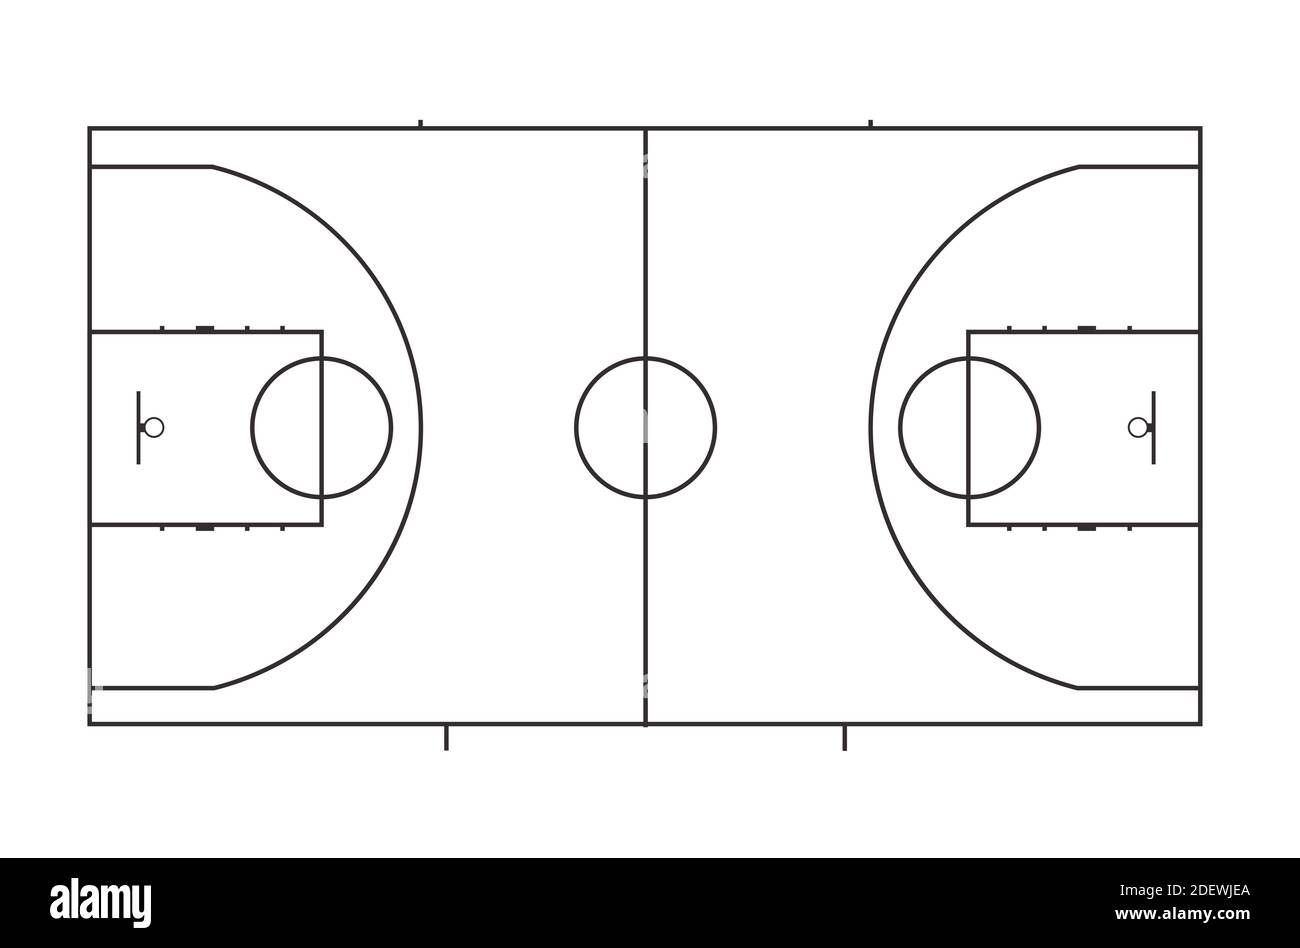 Basketball-Feld Layout mit Markierungen. Blick von oben. Schwarz-Weiß-Plan.  Vektorgrafik isoliert auf weißem Hintergrund. Linienkunst  Stock-Vektorgrafik - Alamy